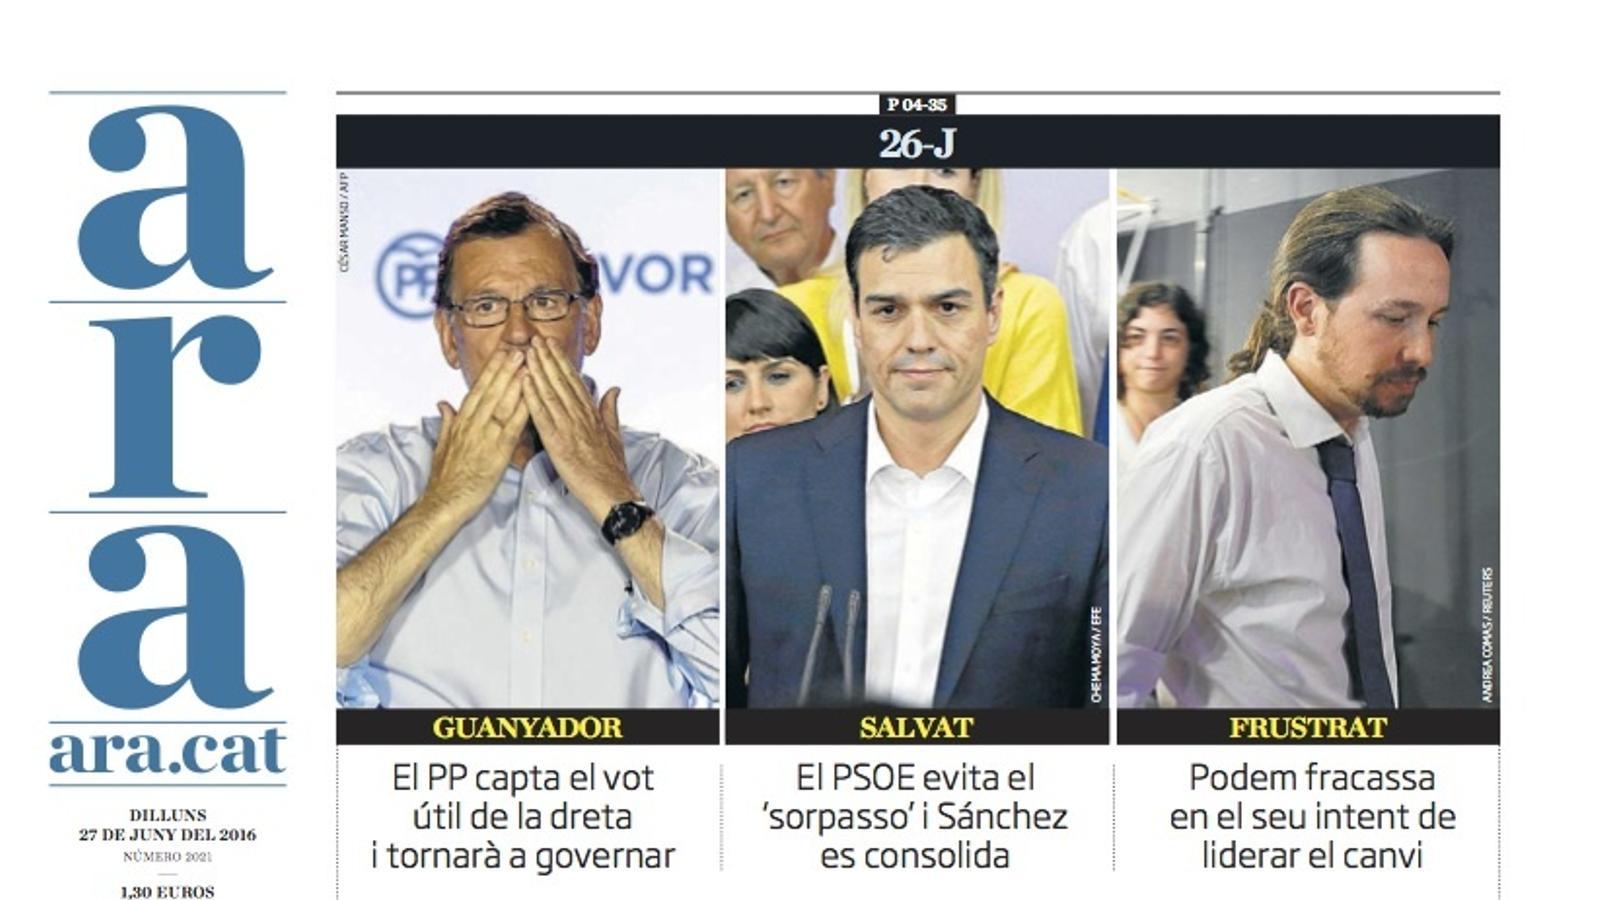 "Espanya reforça Rajoy", portada de l'ARA